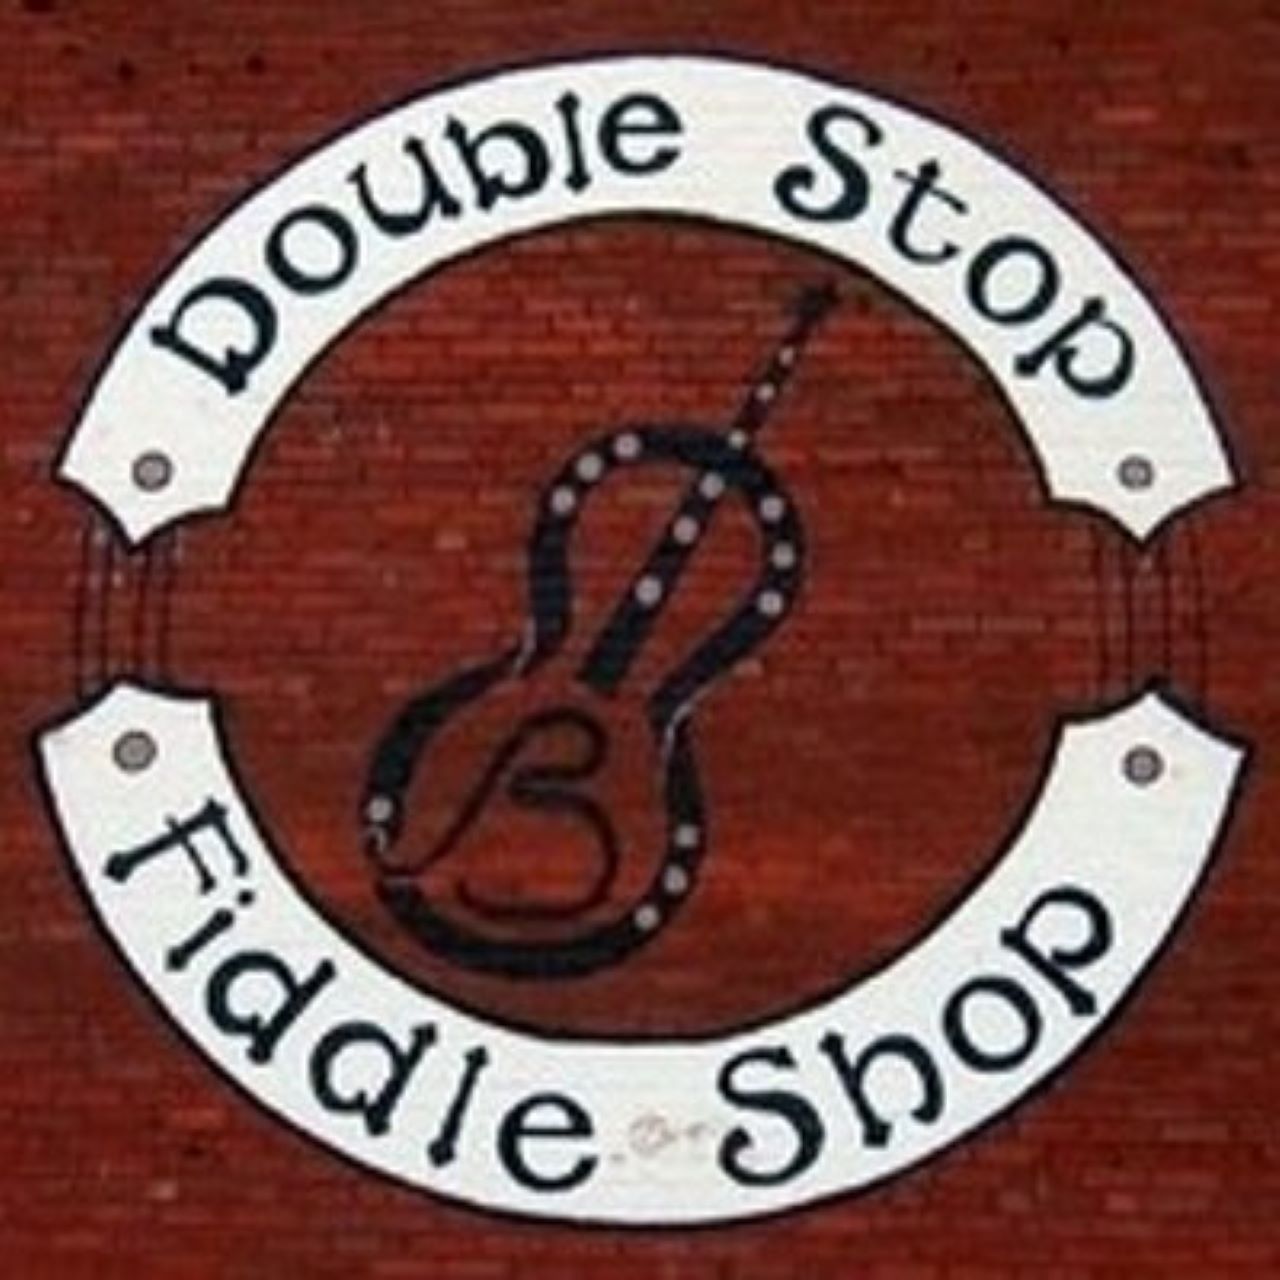 Double Stop Fiddle Shop